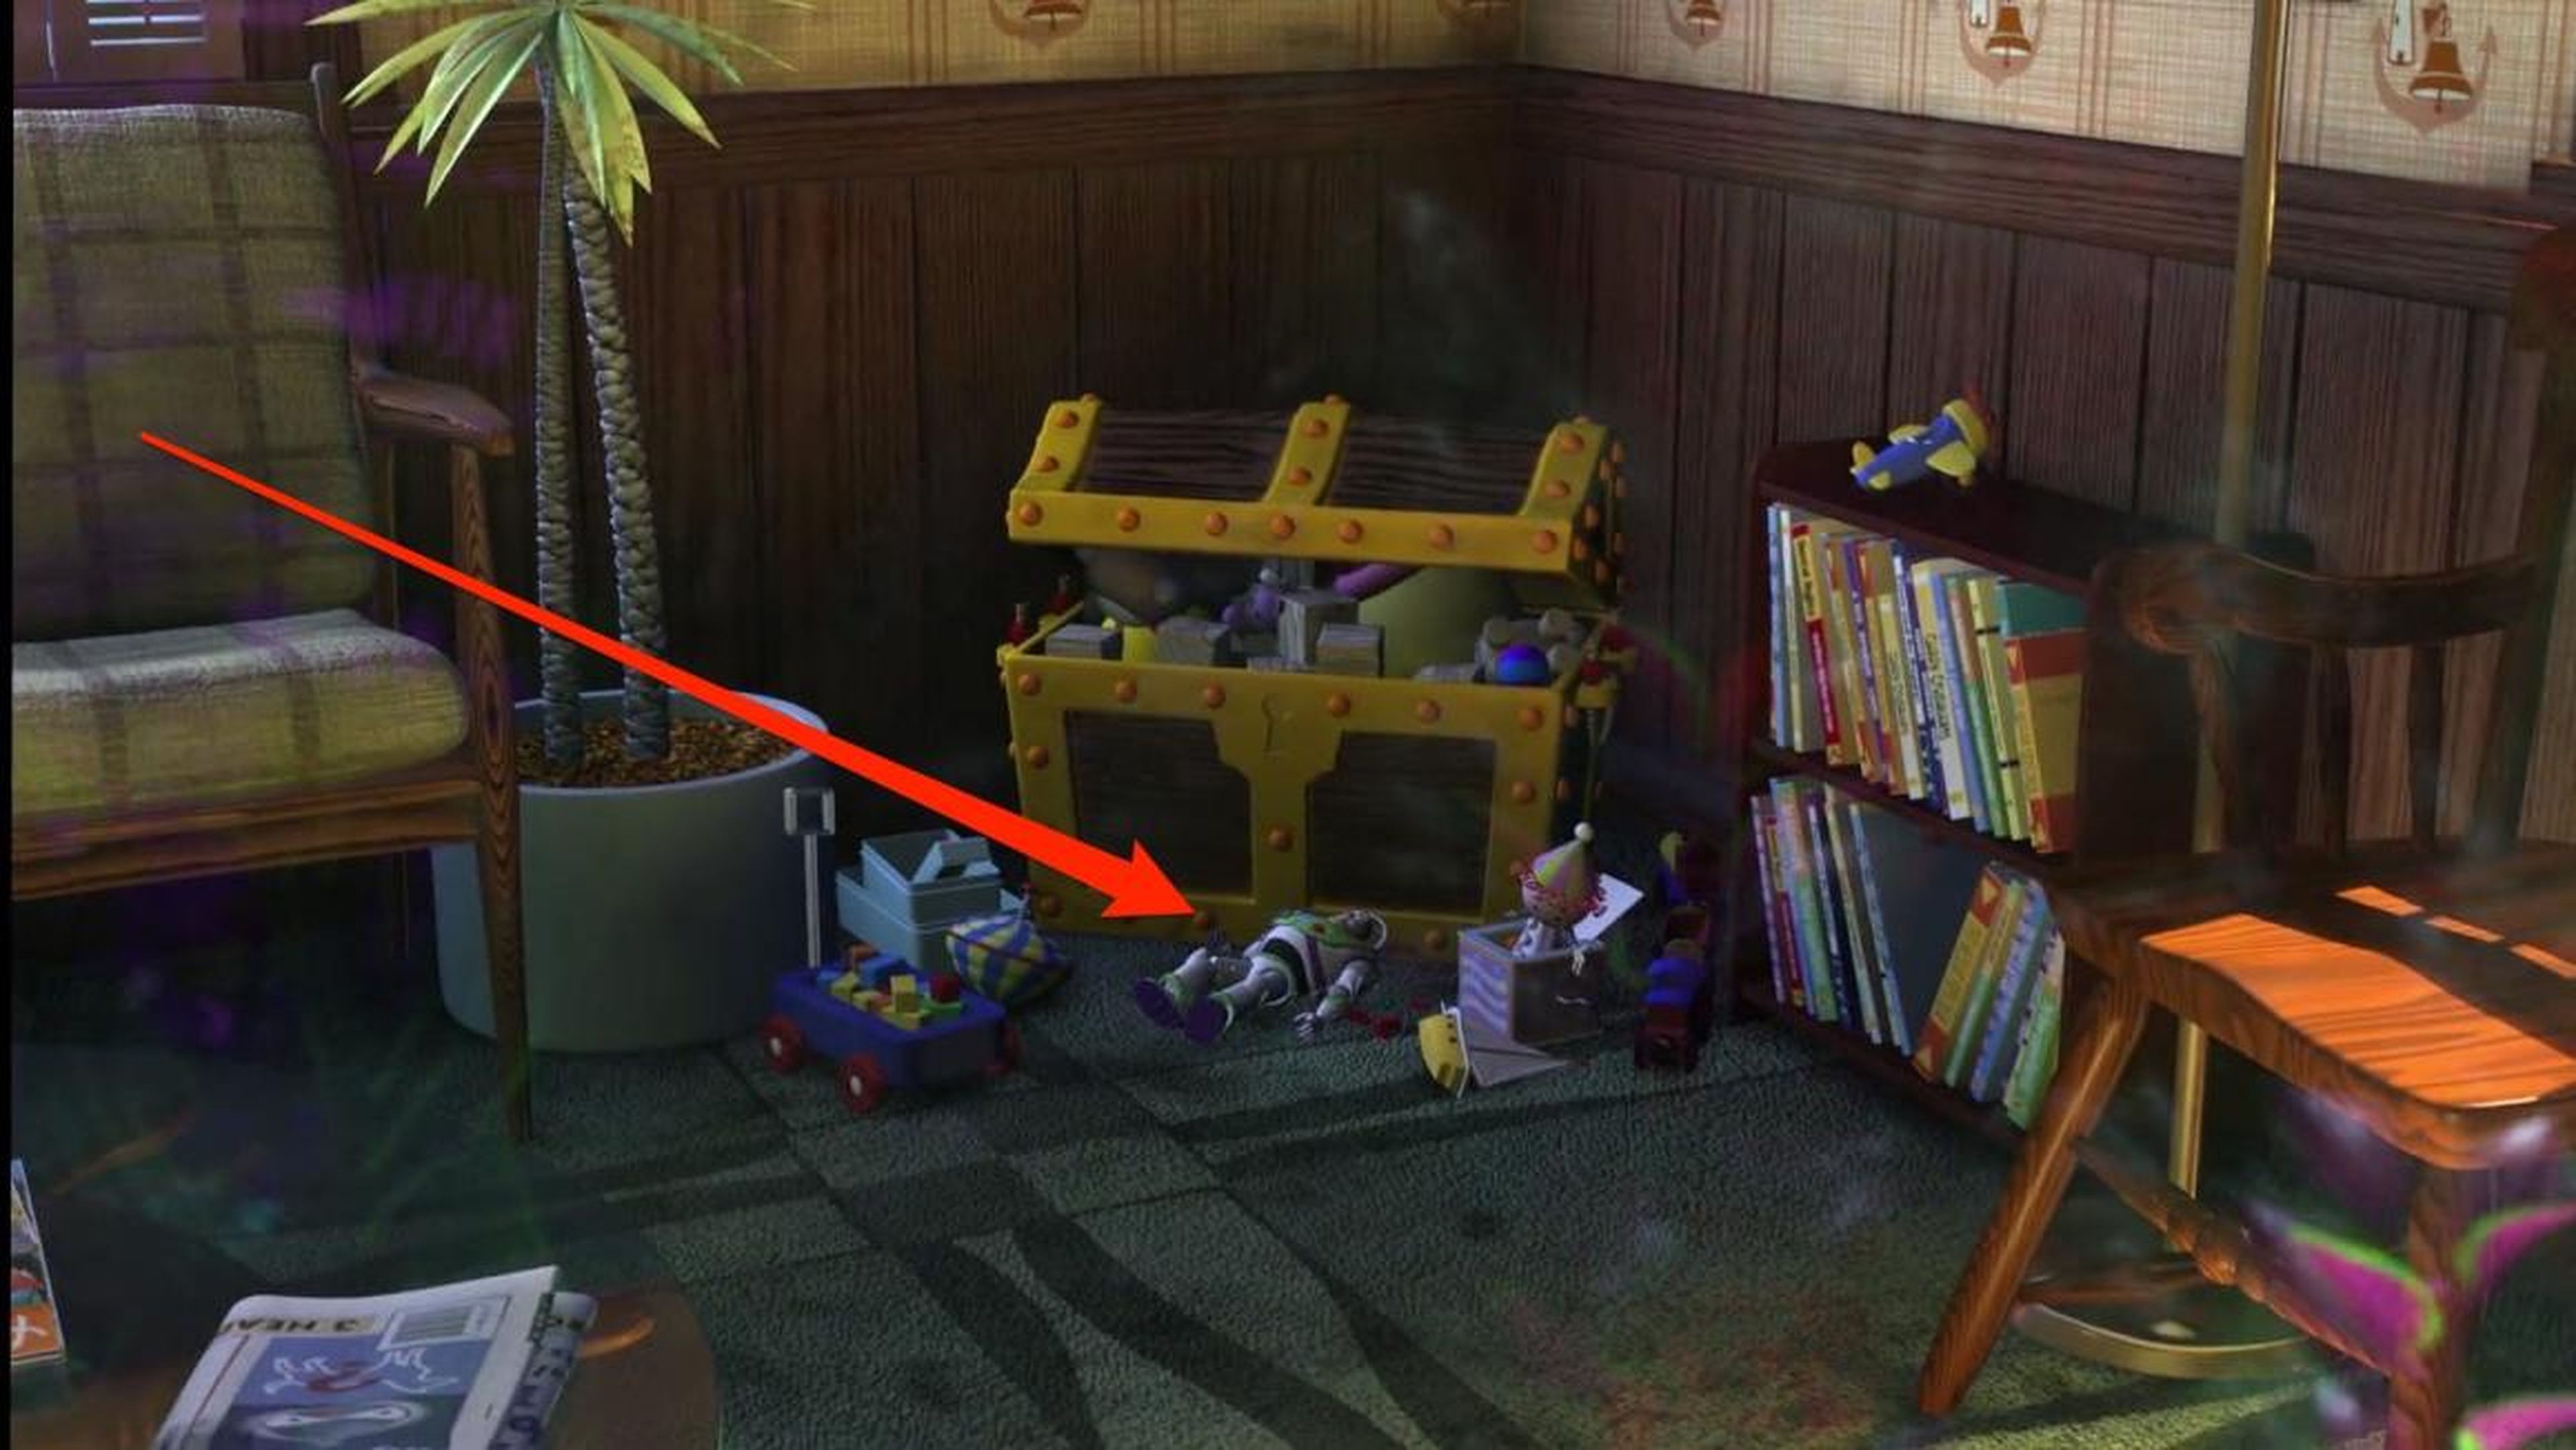 Buzz es el juguete más destacado de esa oficina.